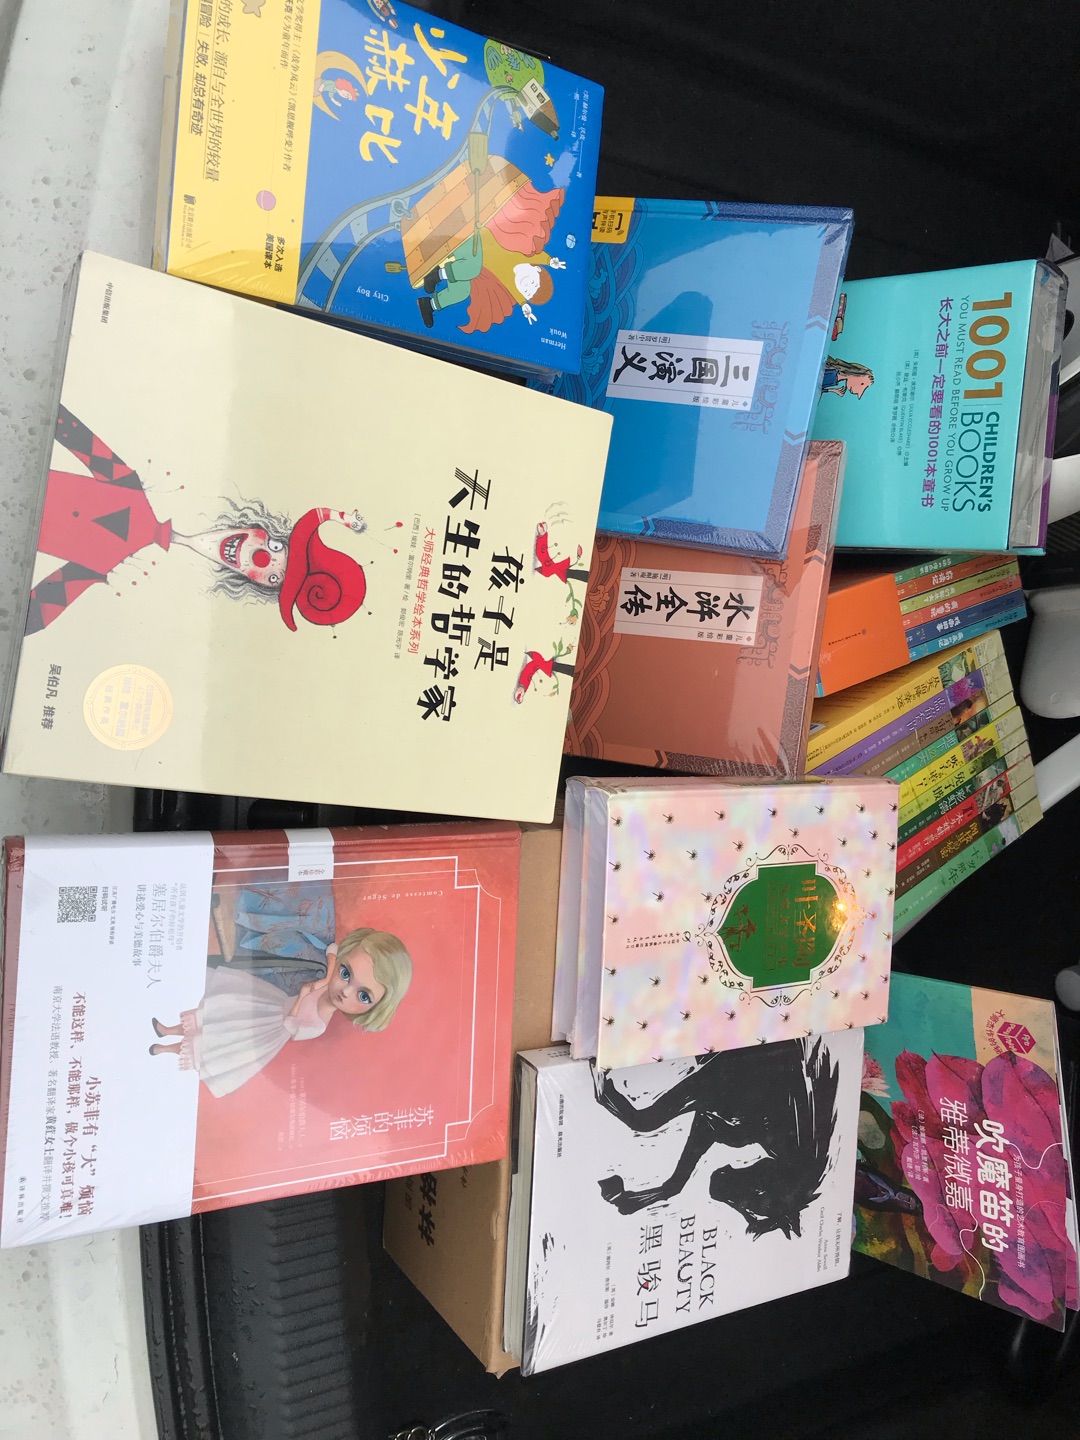 上海书展上发现的一套好书，刚拿到还没拆开，希望孩子拿到了会爱不释手！